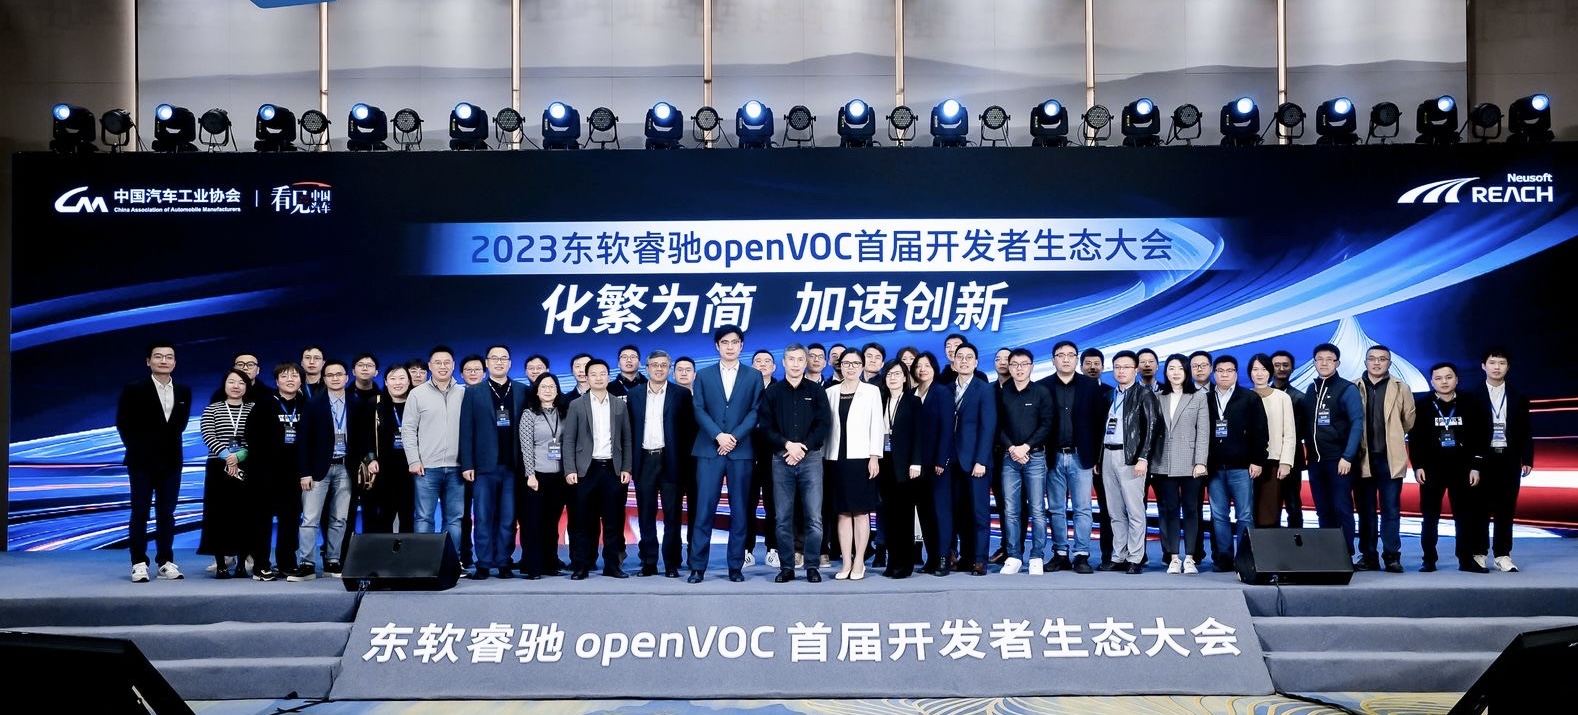 东软睿驰生态伙伴出席openvoc首届开发者生态大会 共同探讨汽车生态发展新范式